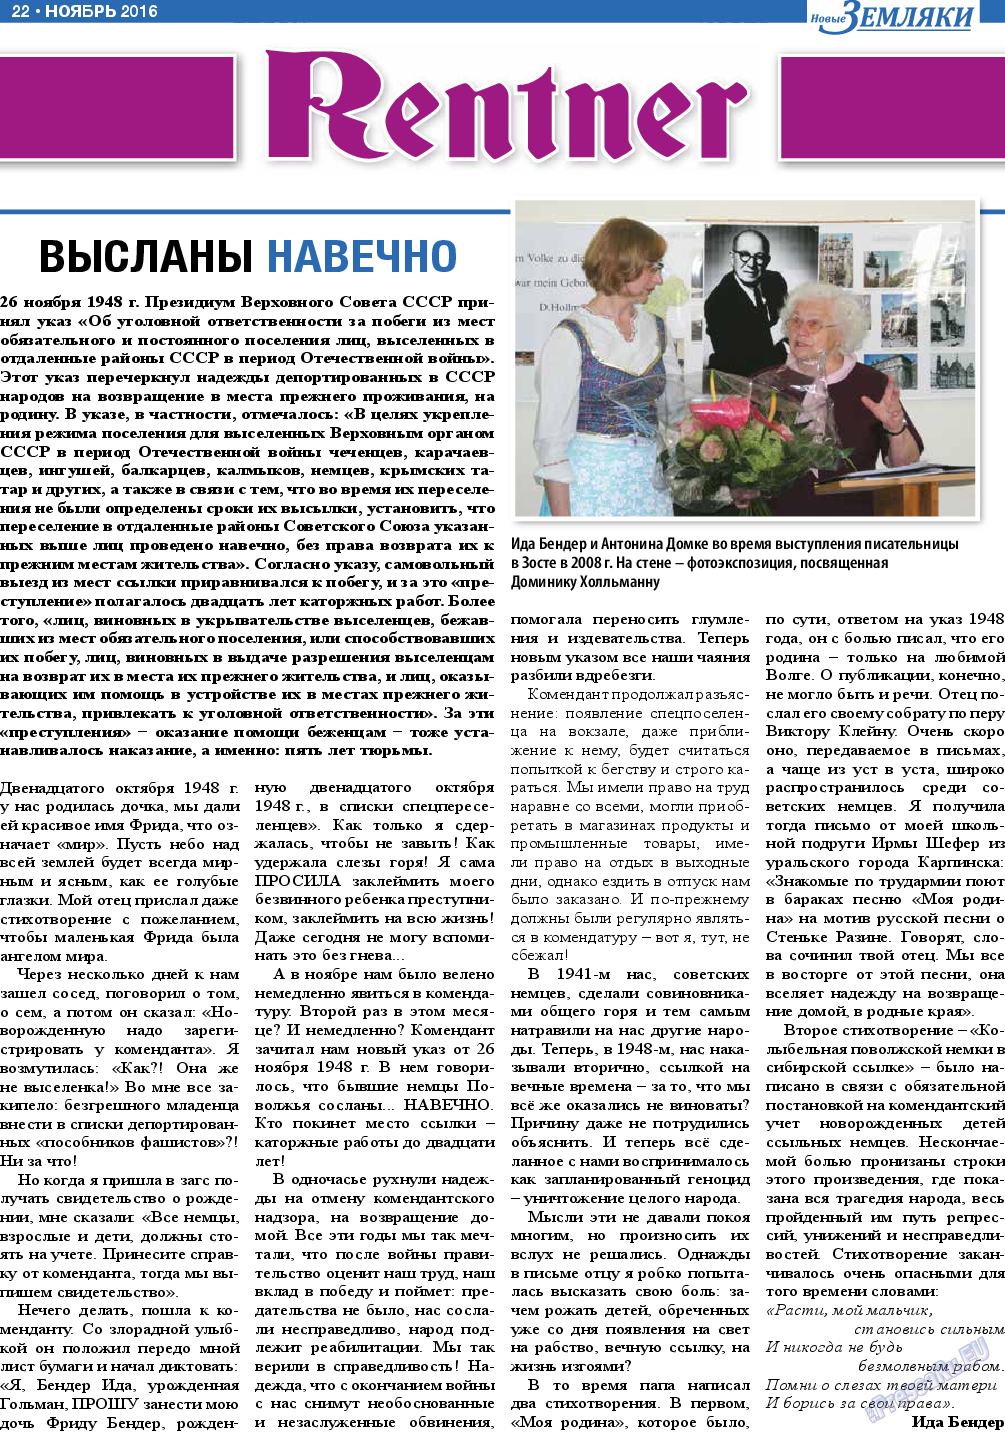 Новые Земляки, газета. 2016 №11 стр.22